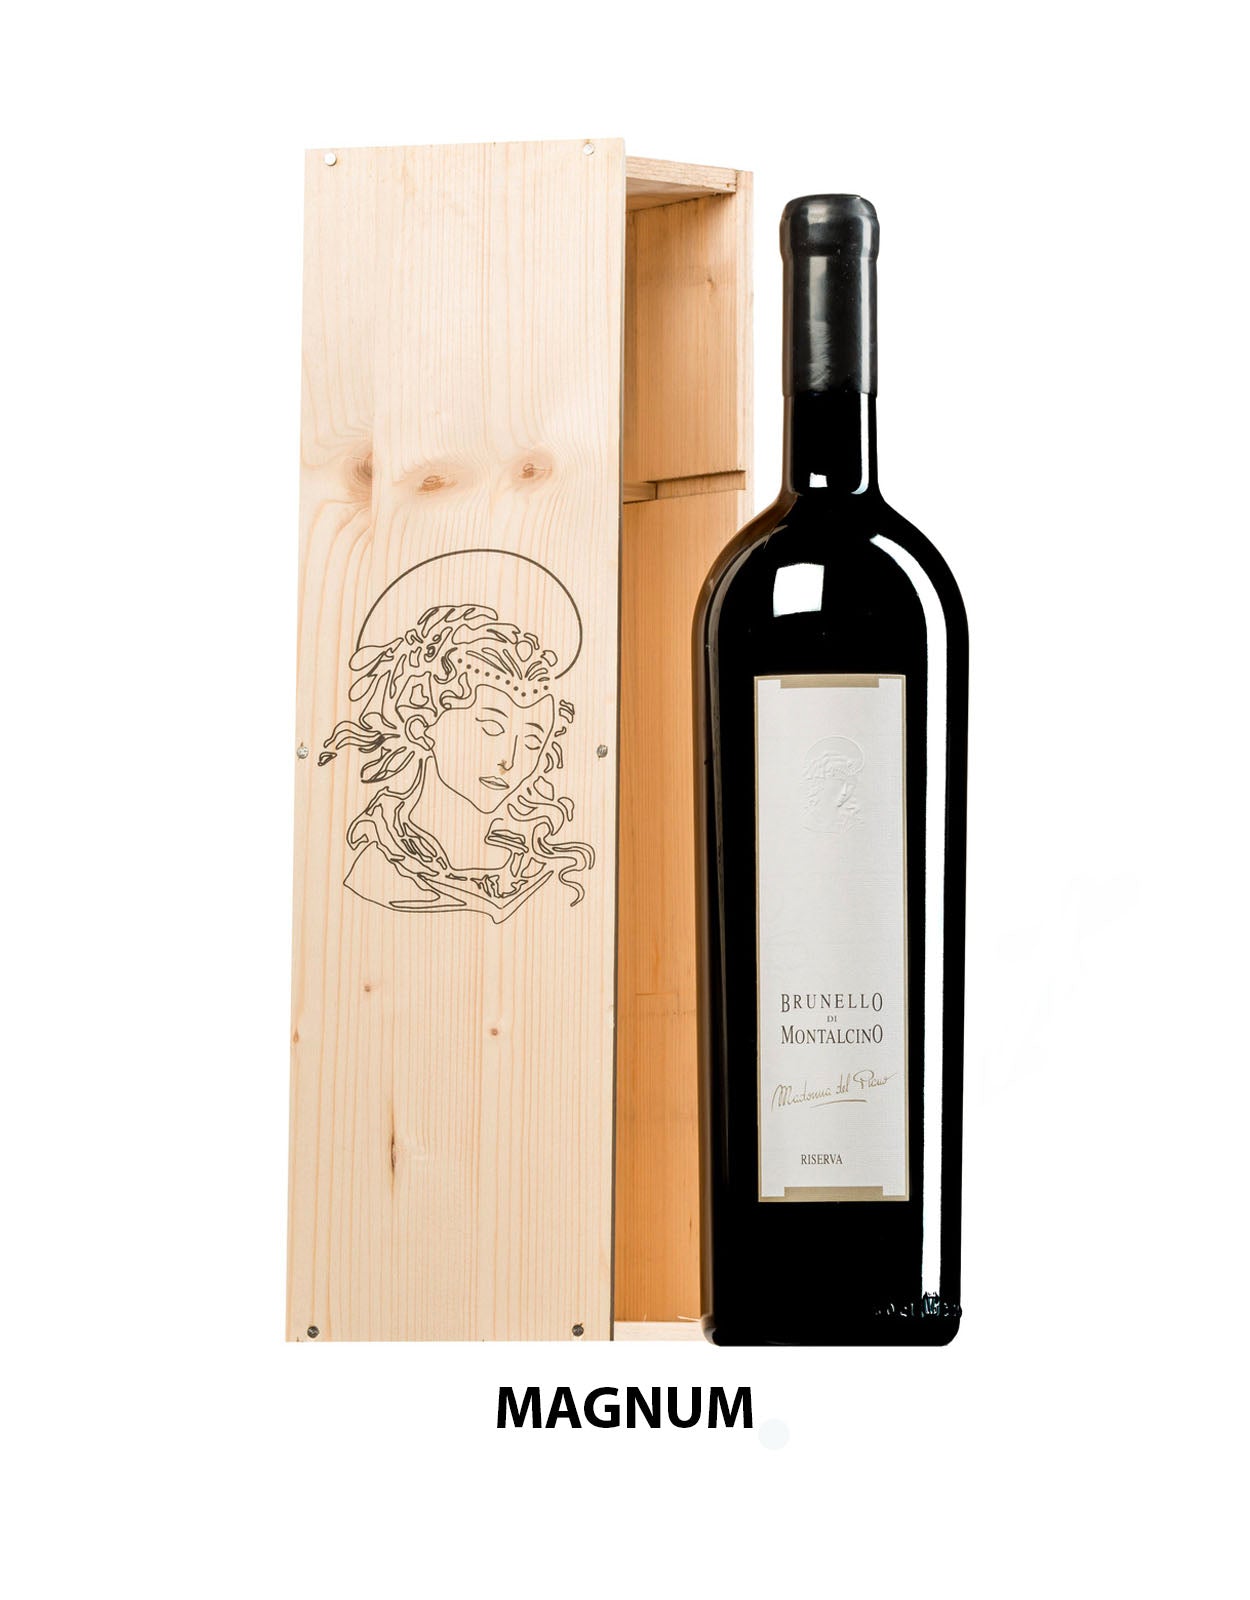 Valdicava Brunello di Montalcino Riserva 'Madonna del Piano' 2015 - 1.5 Litre Bottle